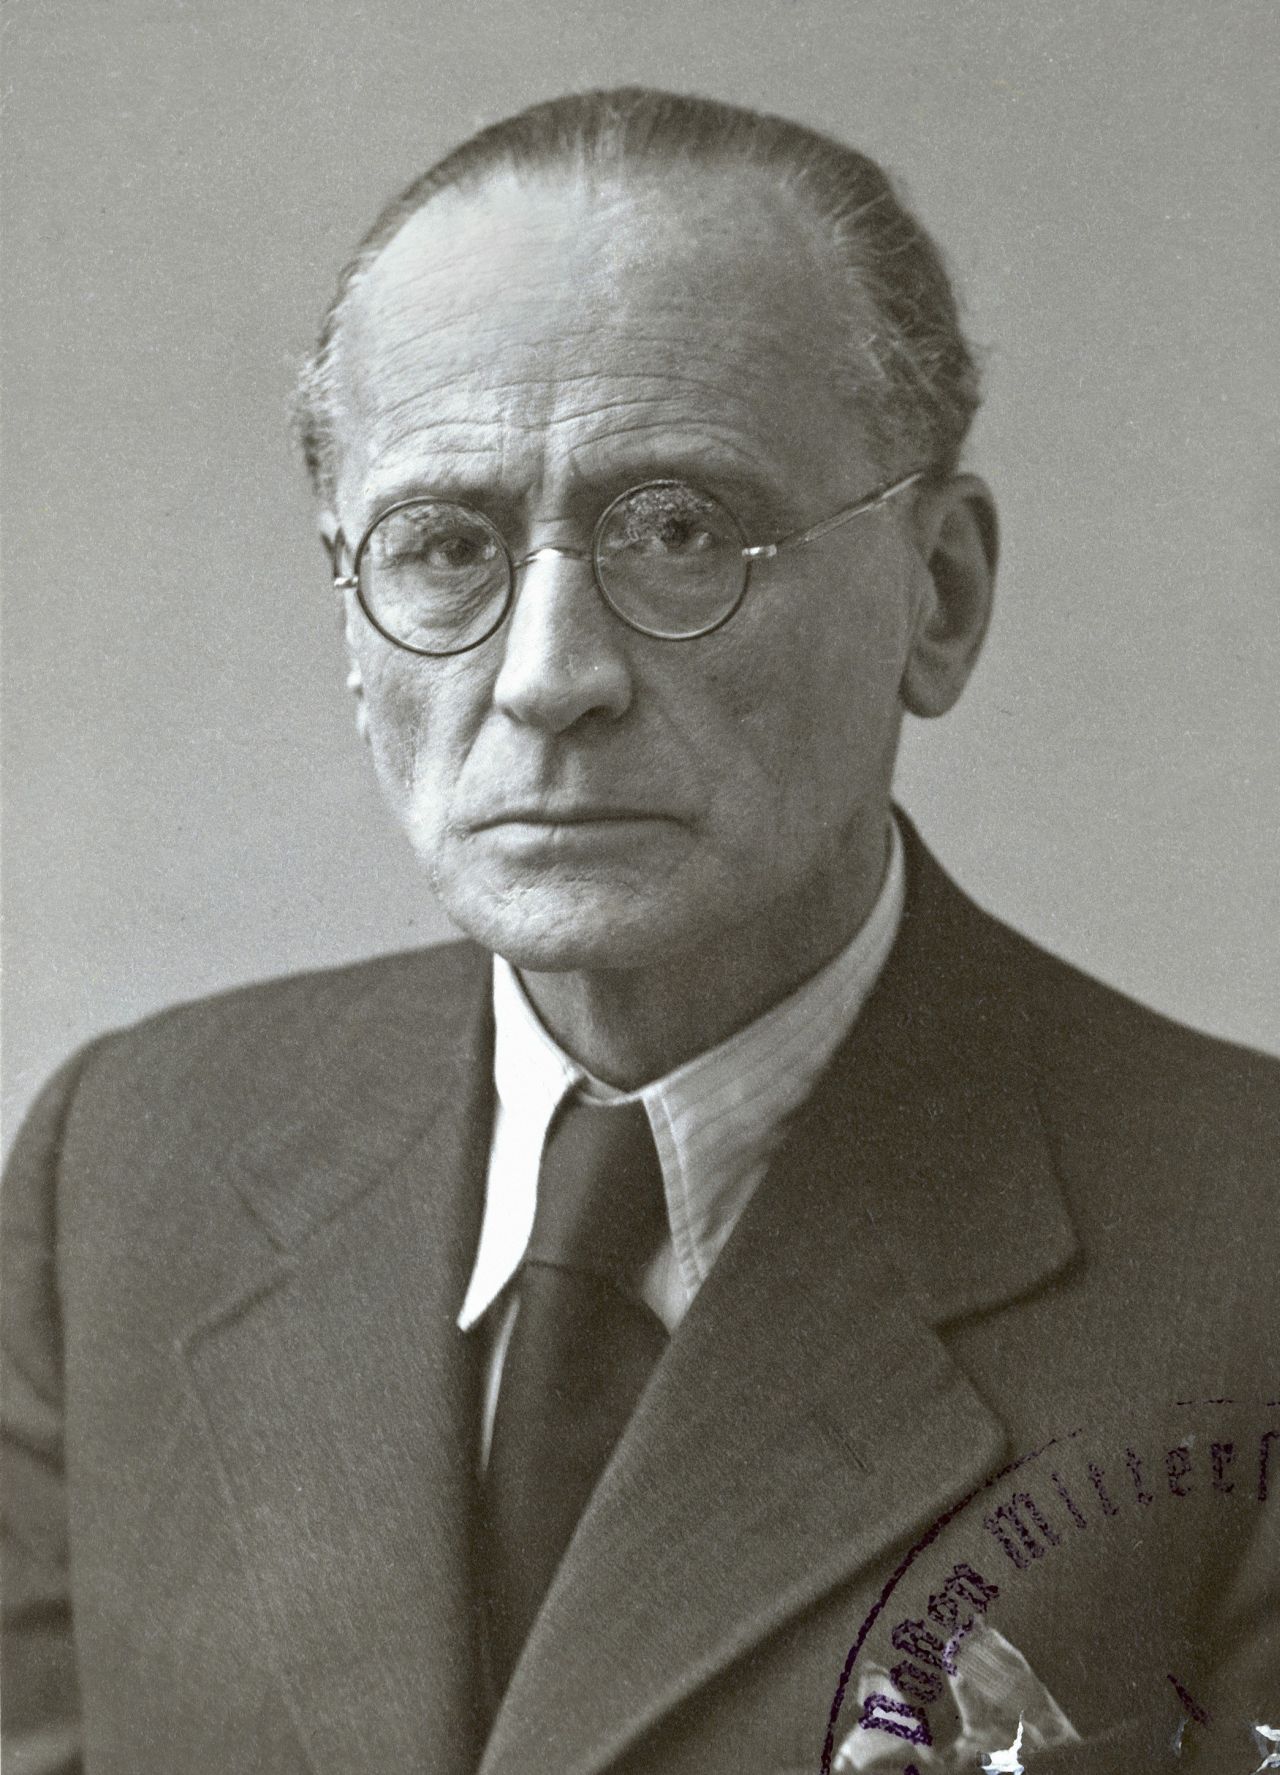 Porträtfotografie des österreichischen Komponisten Anton von Webern, 1945